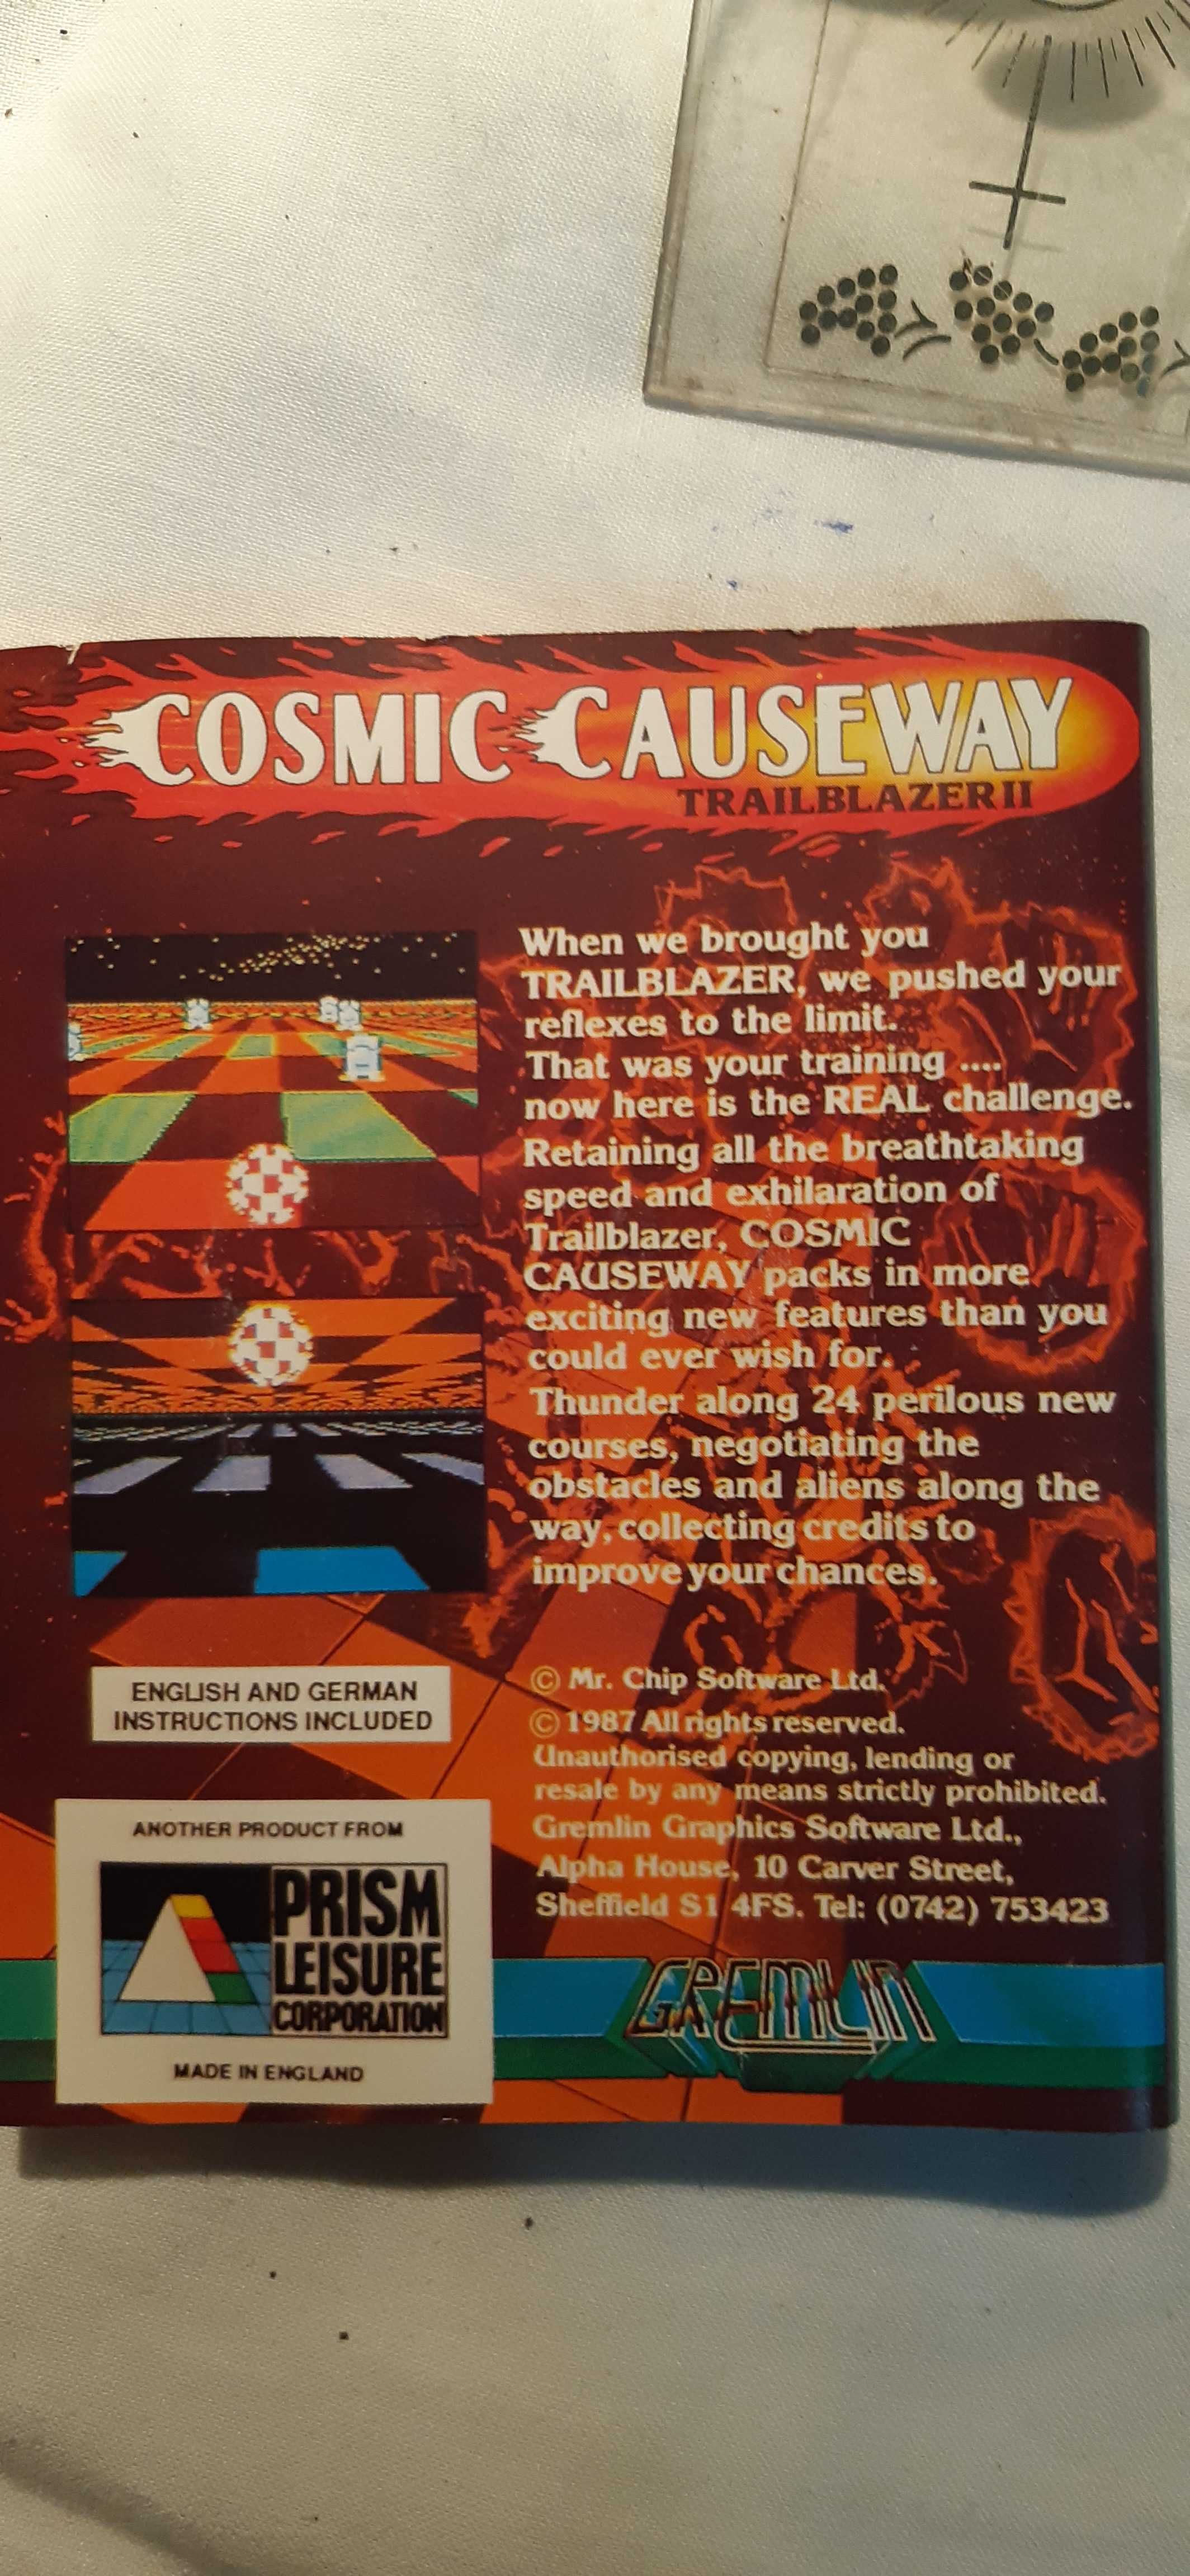 Cosmic Causeway: Trailblazer II c64 c128 okładka dla kolekcjonerów